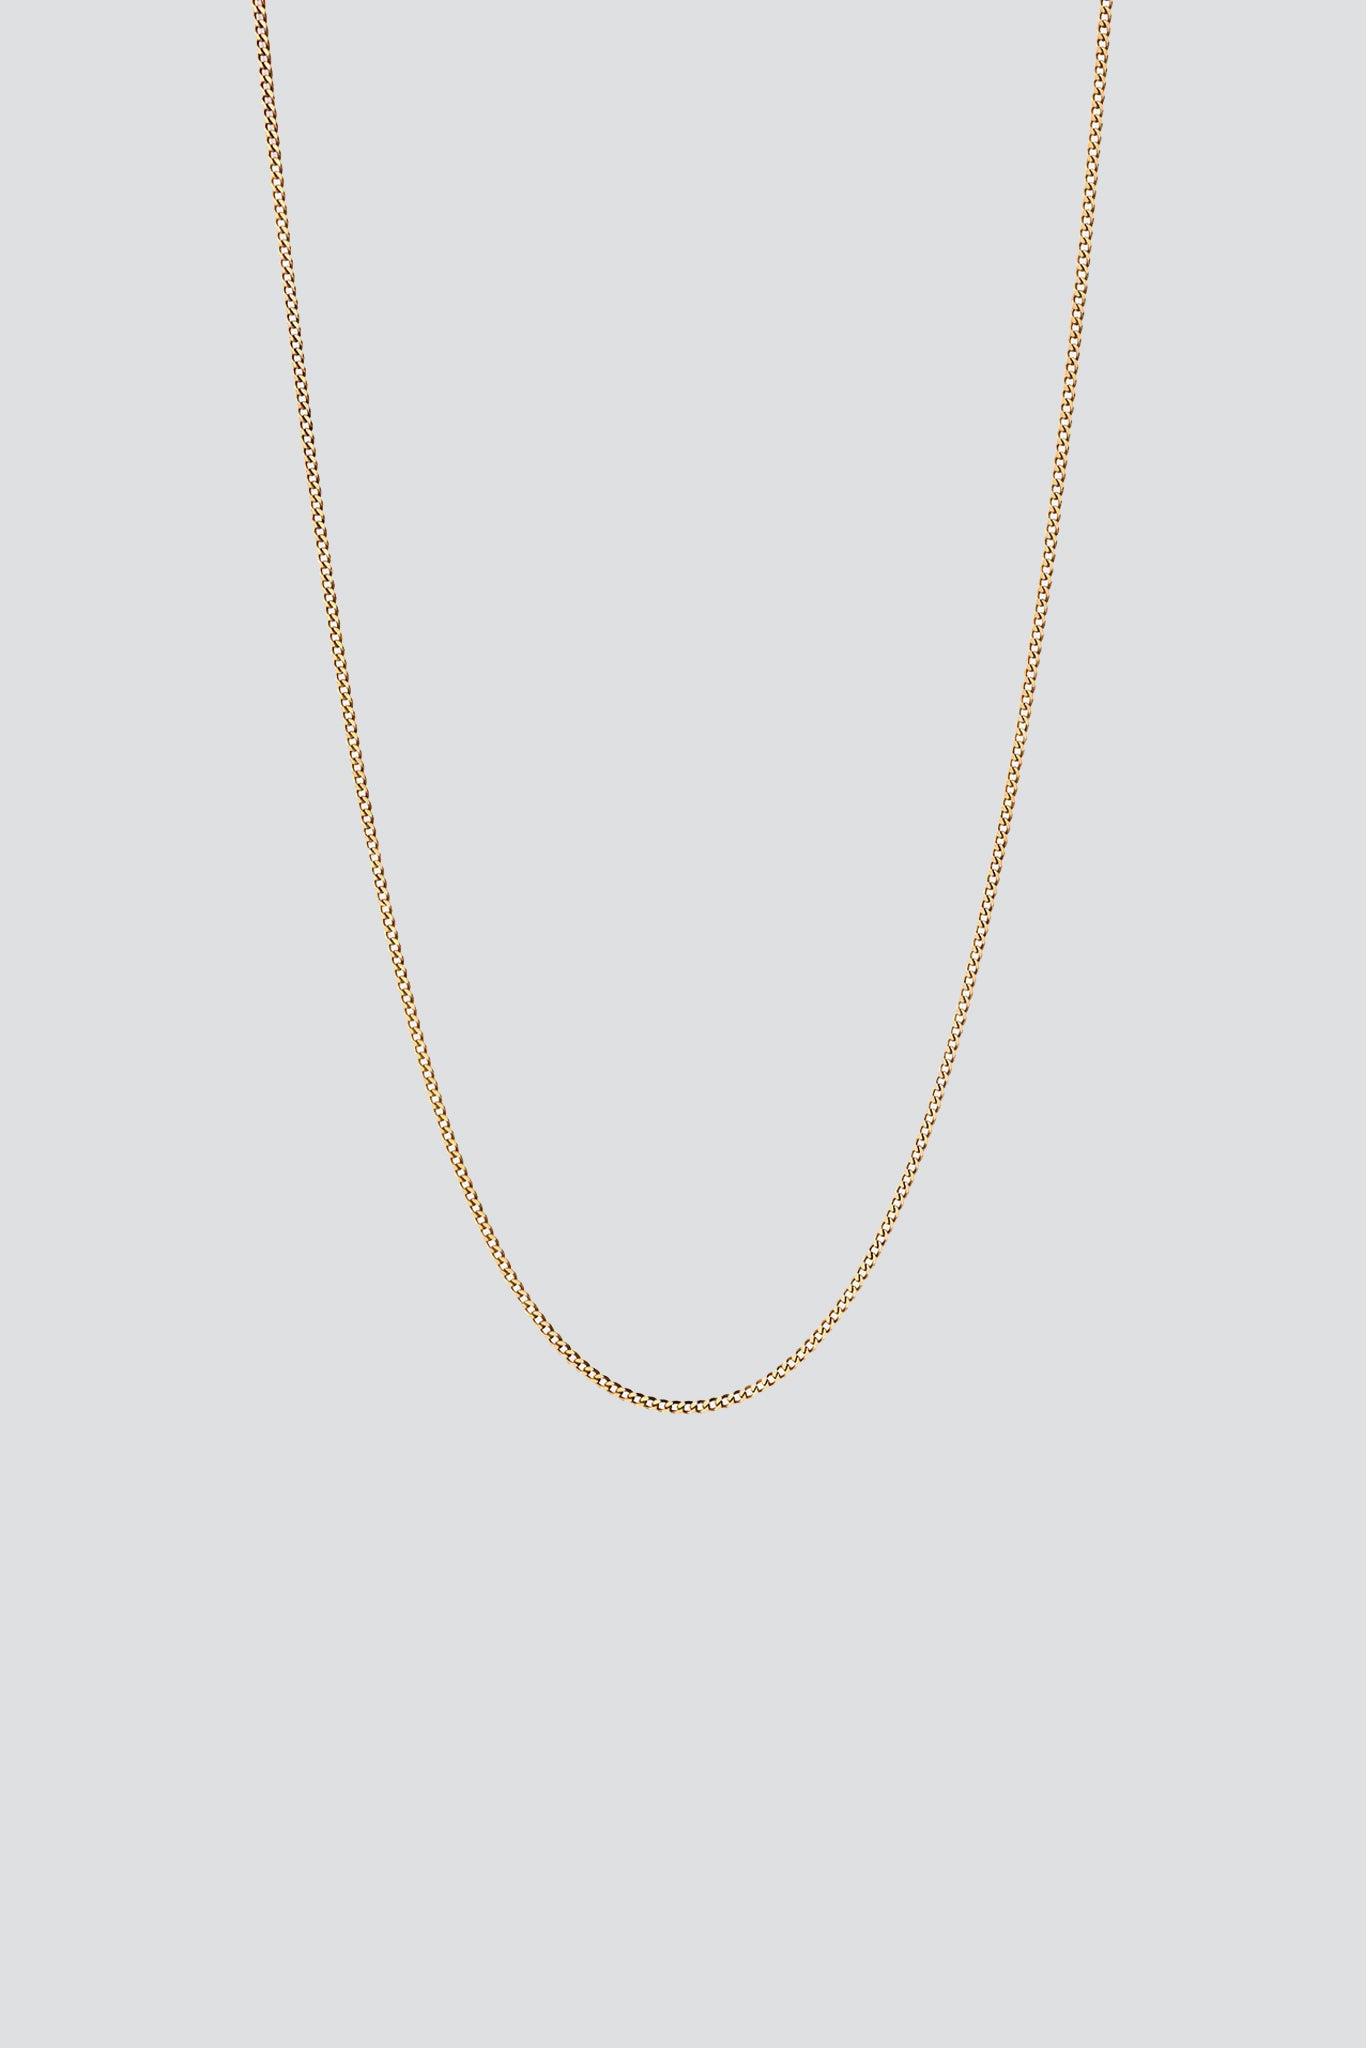 Gold Vermeil 1.3mm Cuban Chain Necklace